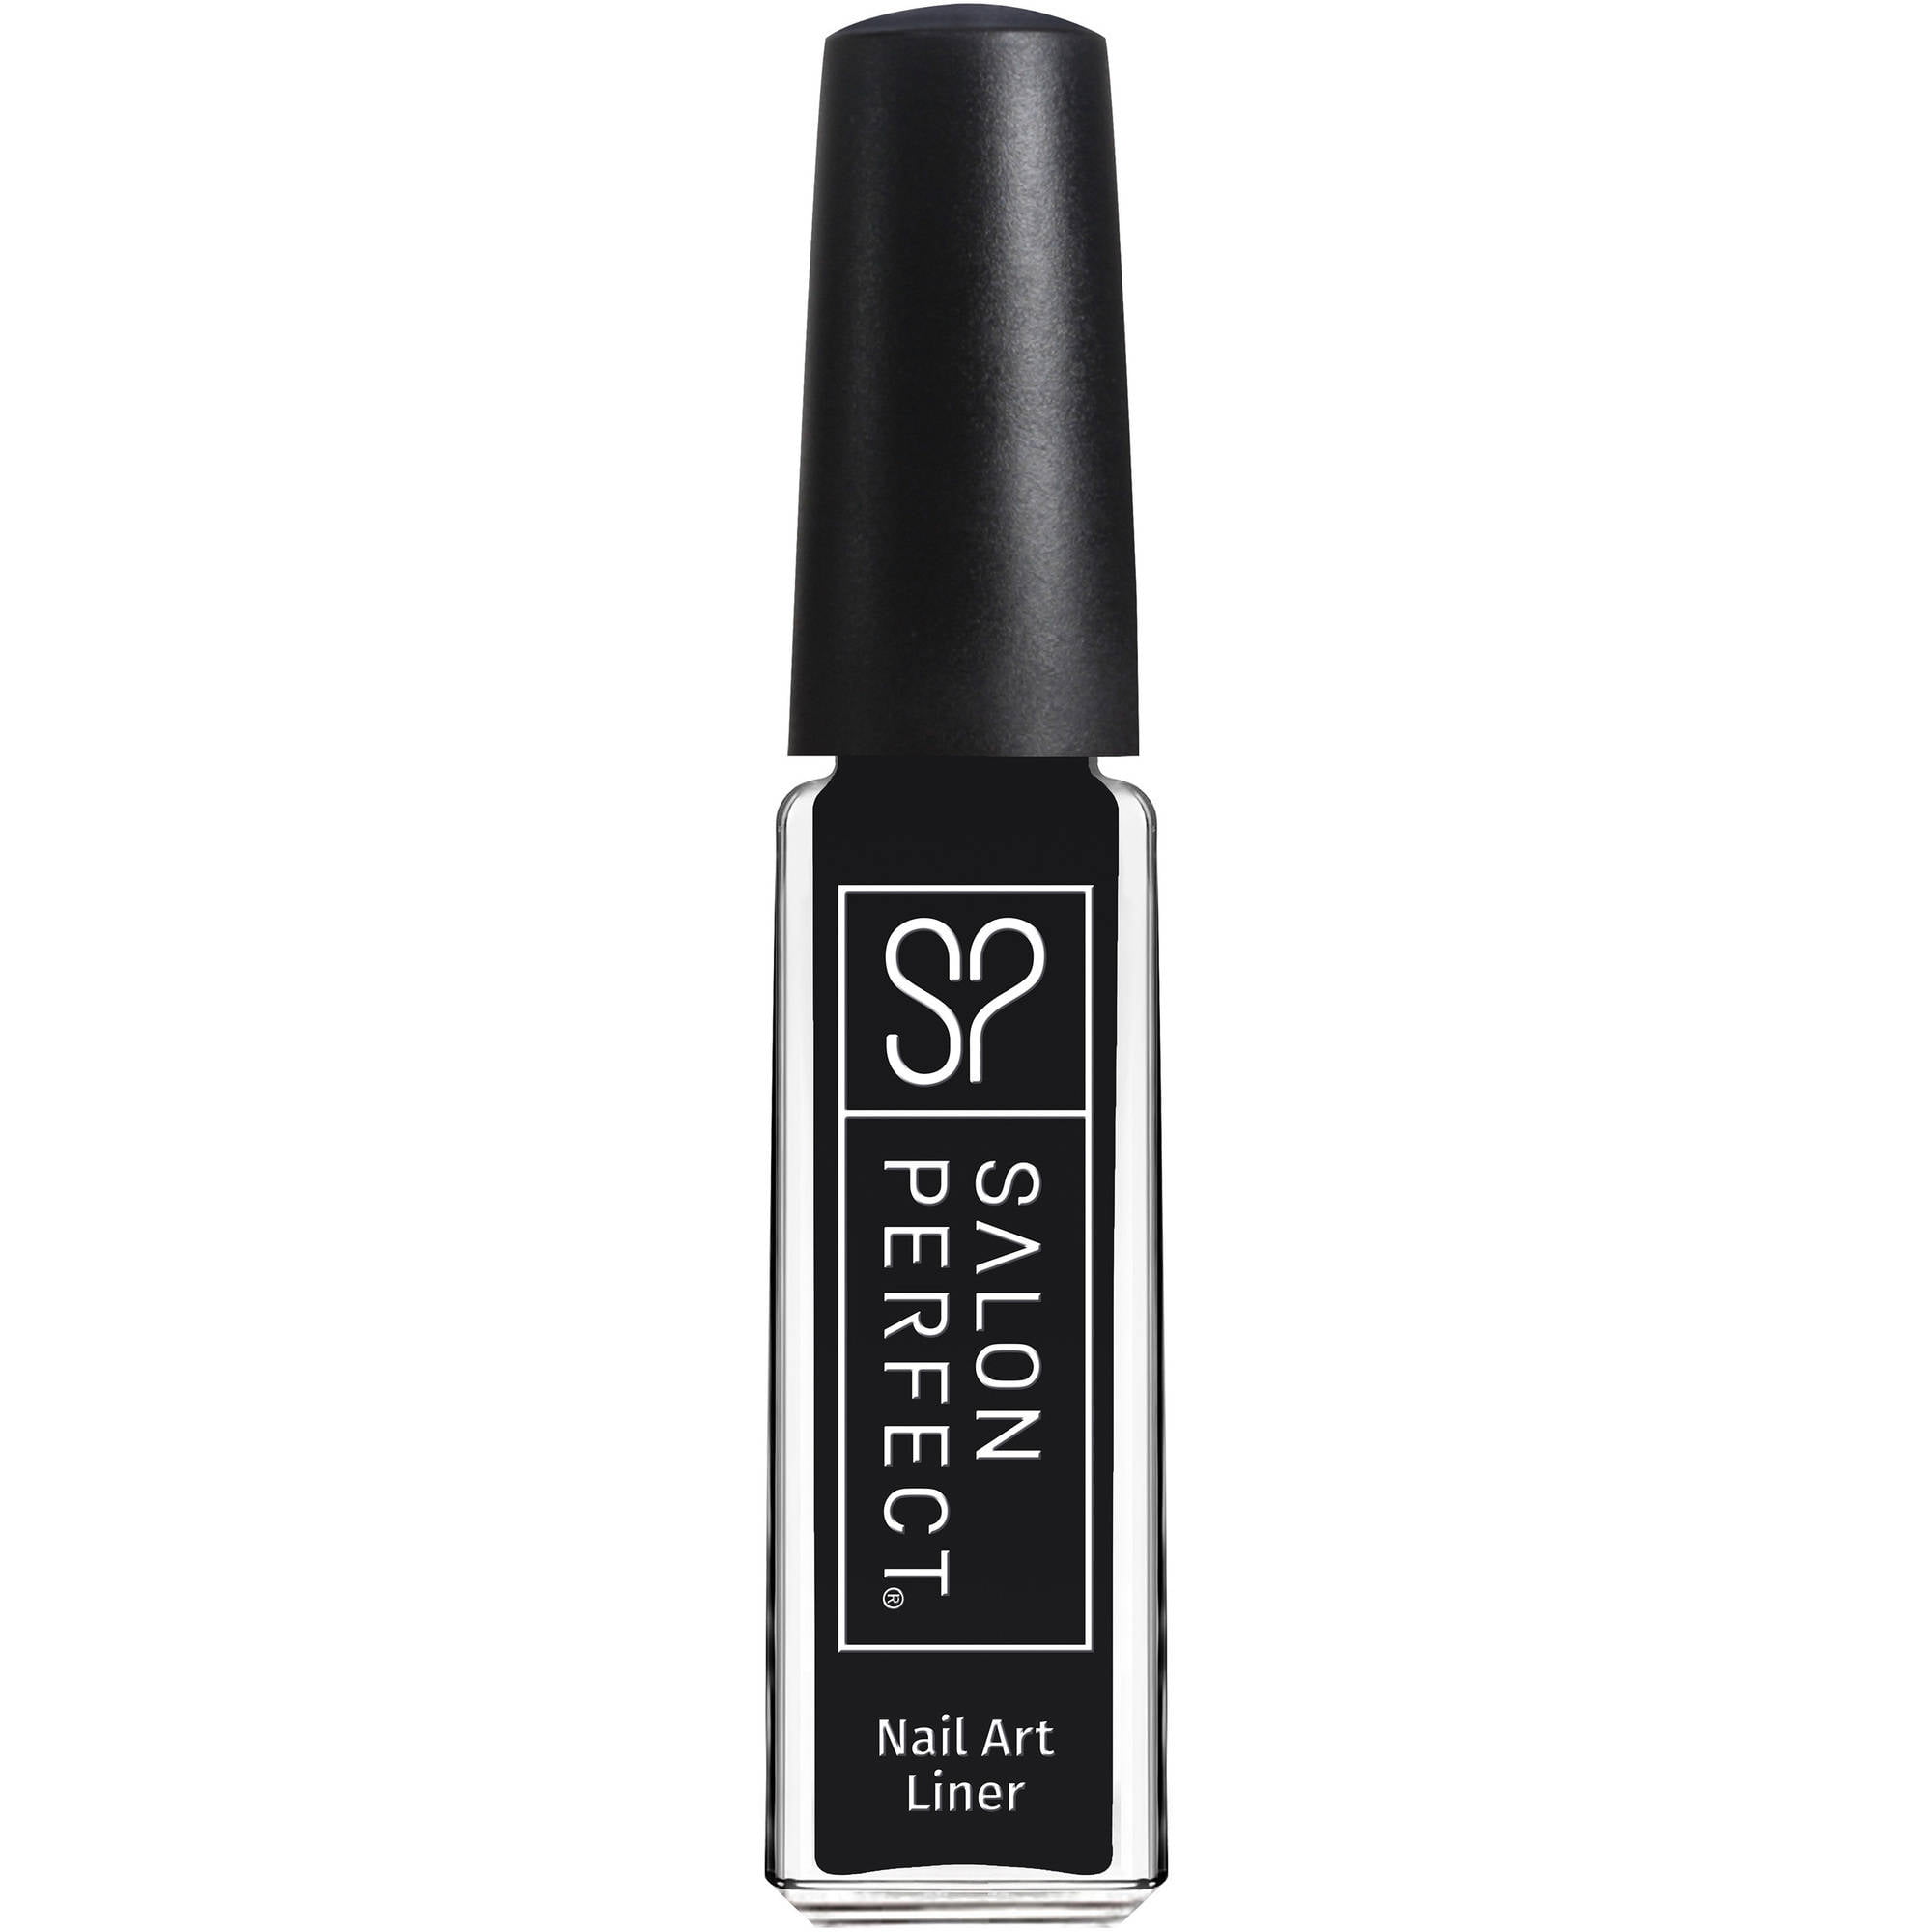 Salon Perfect Nail Art Liner, 801 Black Ink, 0.25 fl oz ...